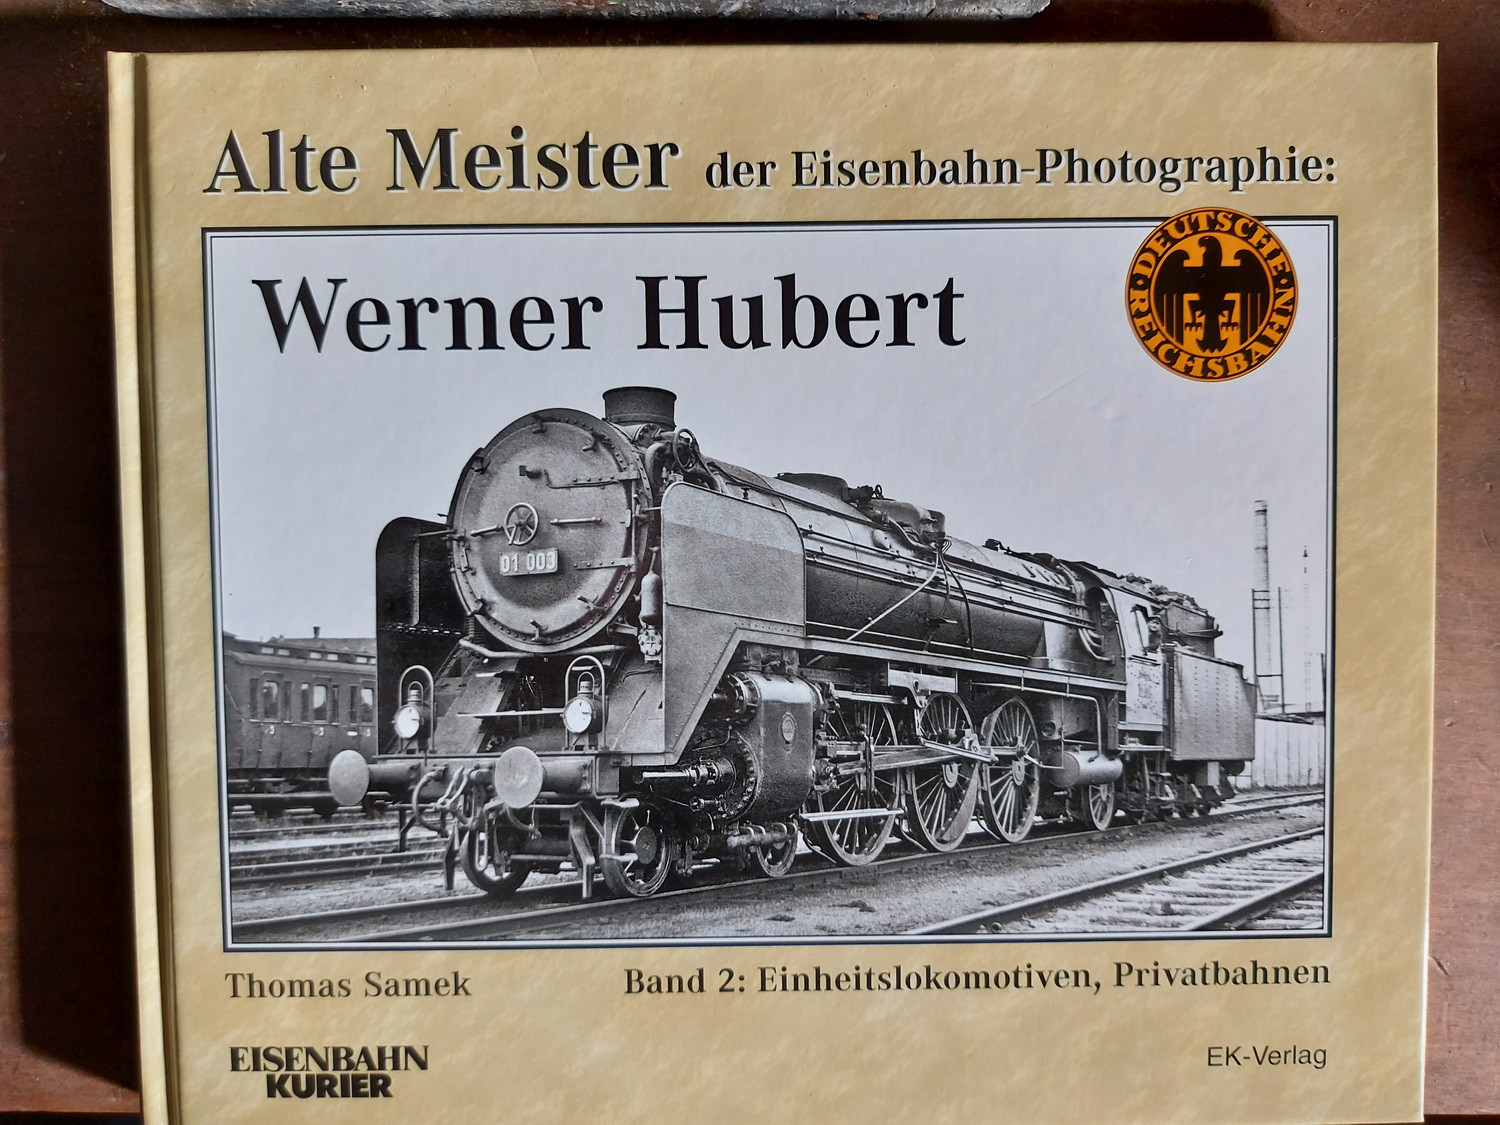 Alte Meister der Eisenbahn-Photographie: Werner Hubert - Band 2: Einheitslokomotiven, Privatbahnen